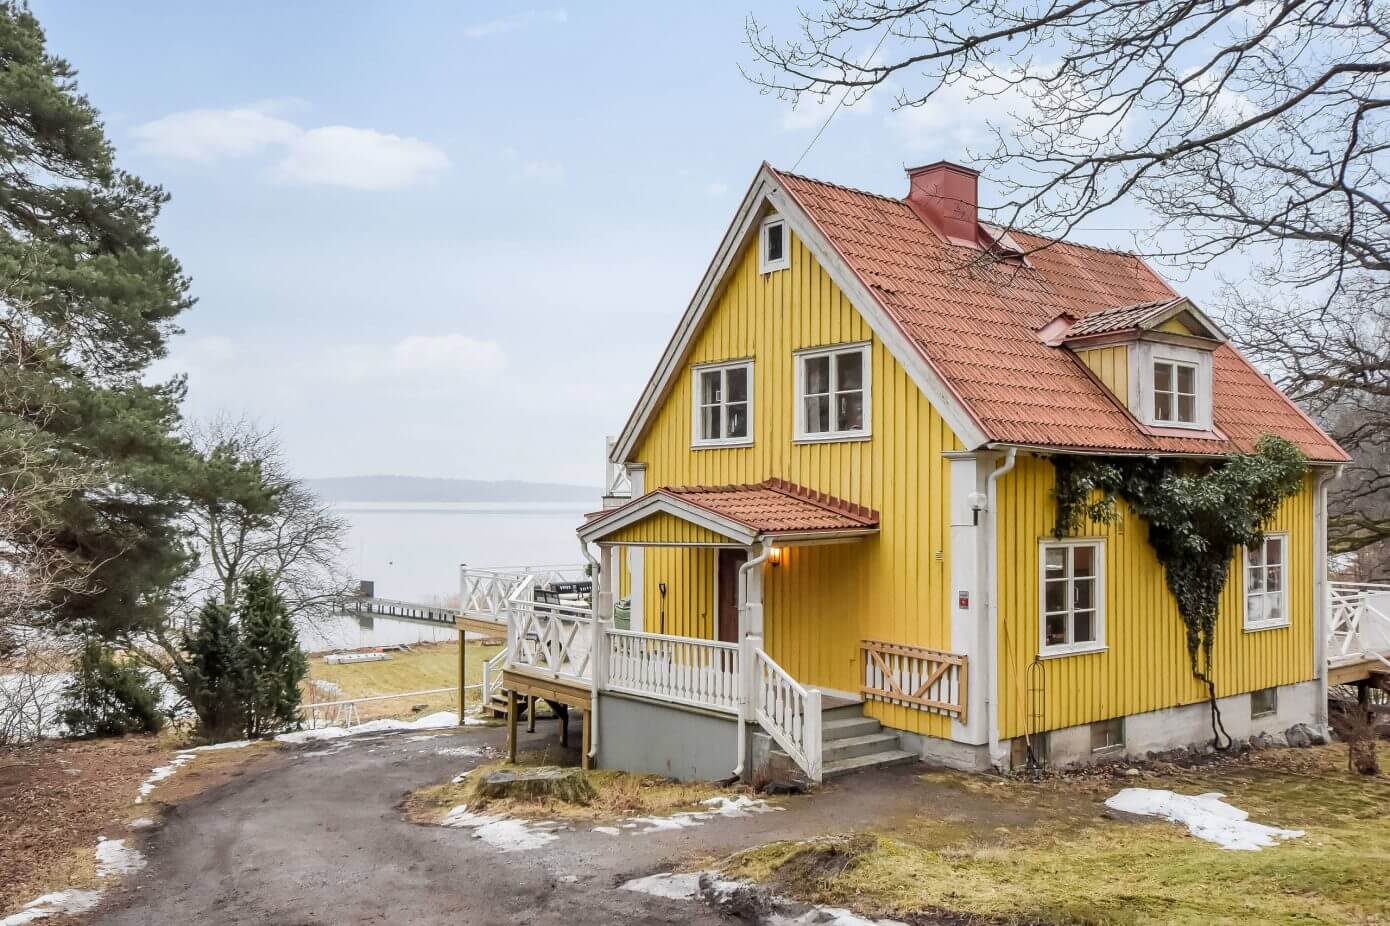 Home in Tyresö by Inne